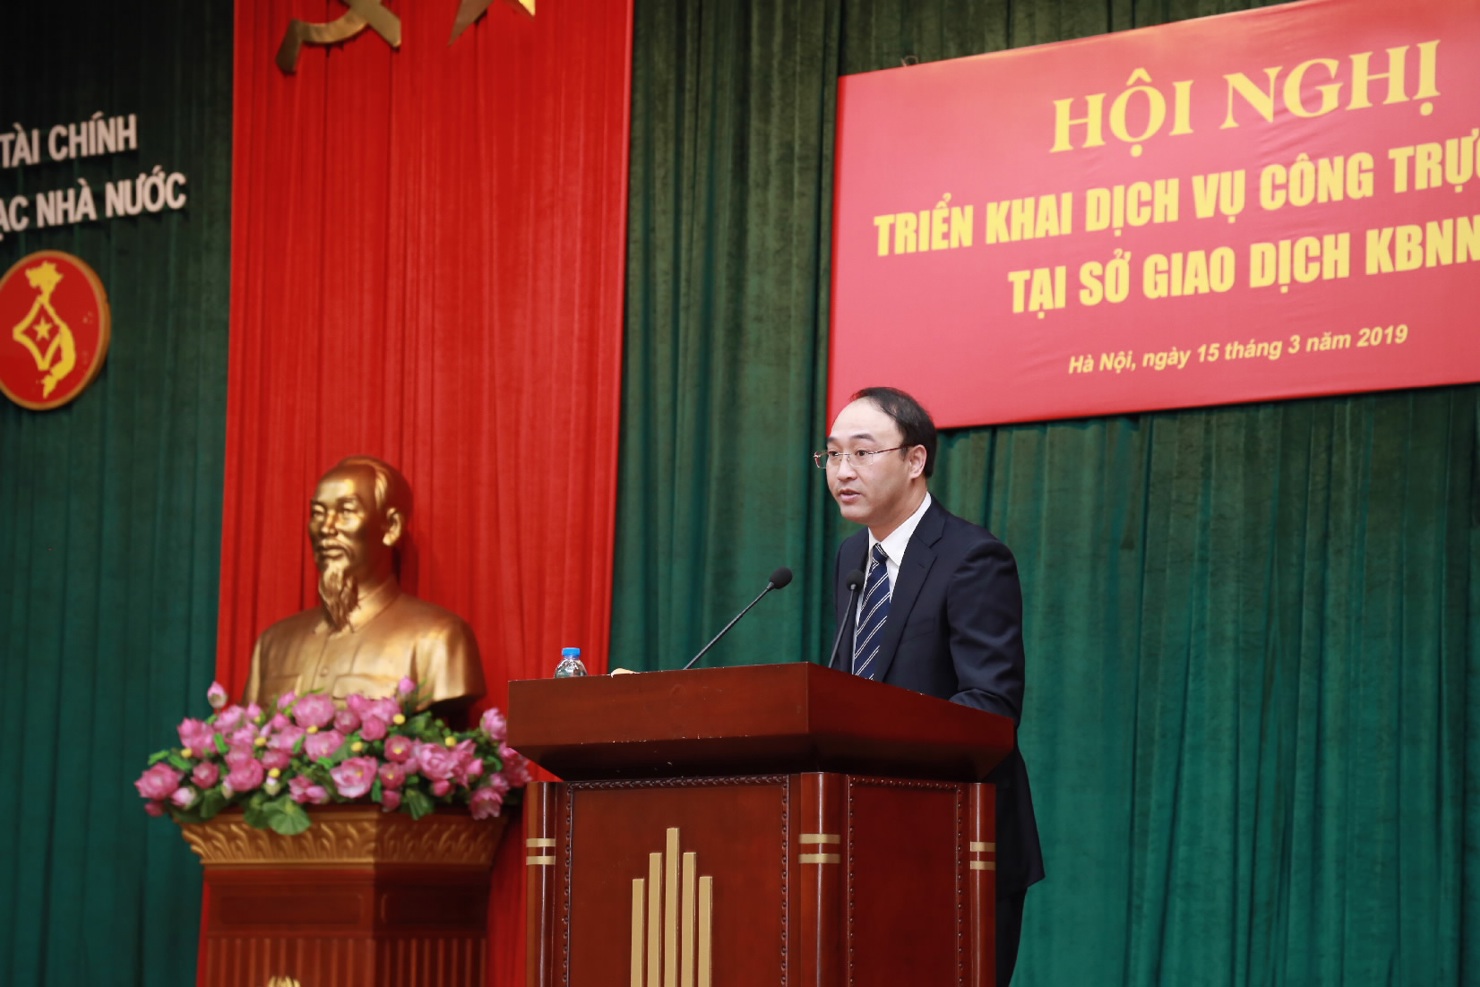 Ông Nguyễn Thái Hà, Giám đốc Sở Giao dịch KBNN phát biểu khai mạc hội nghị